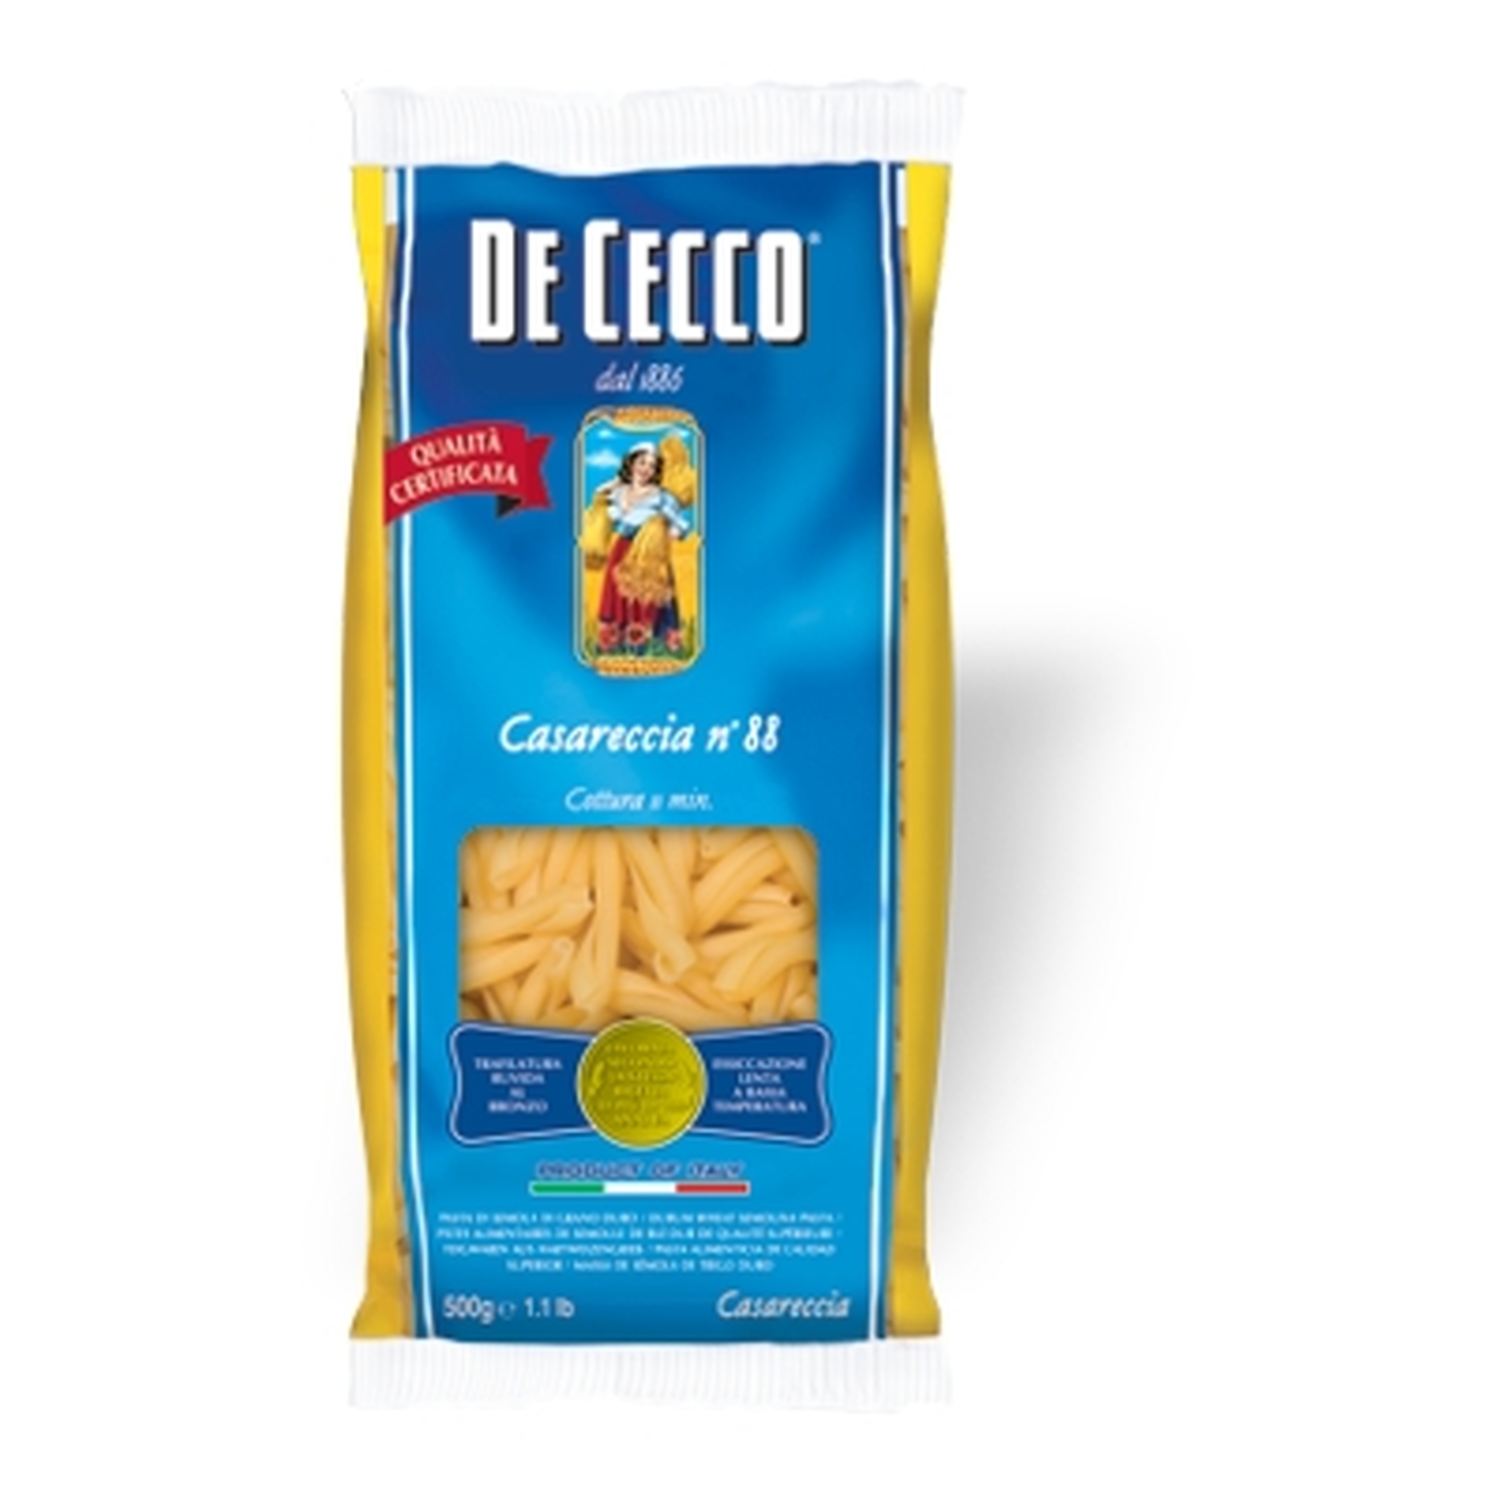 Nudeln Pasta Casareccia n° 88 5 x 500 gr. - De Cecco